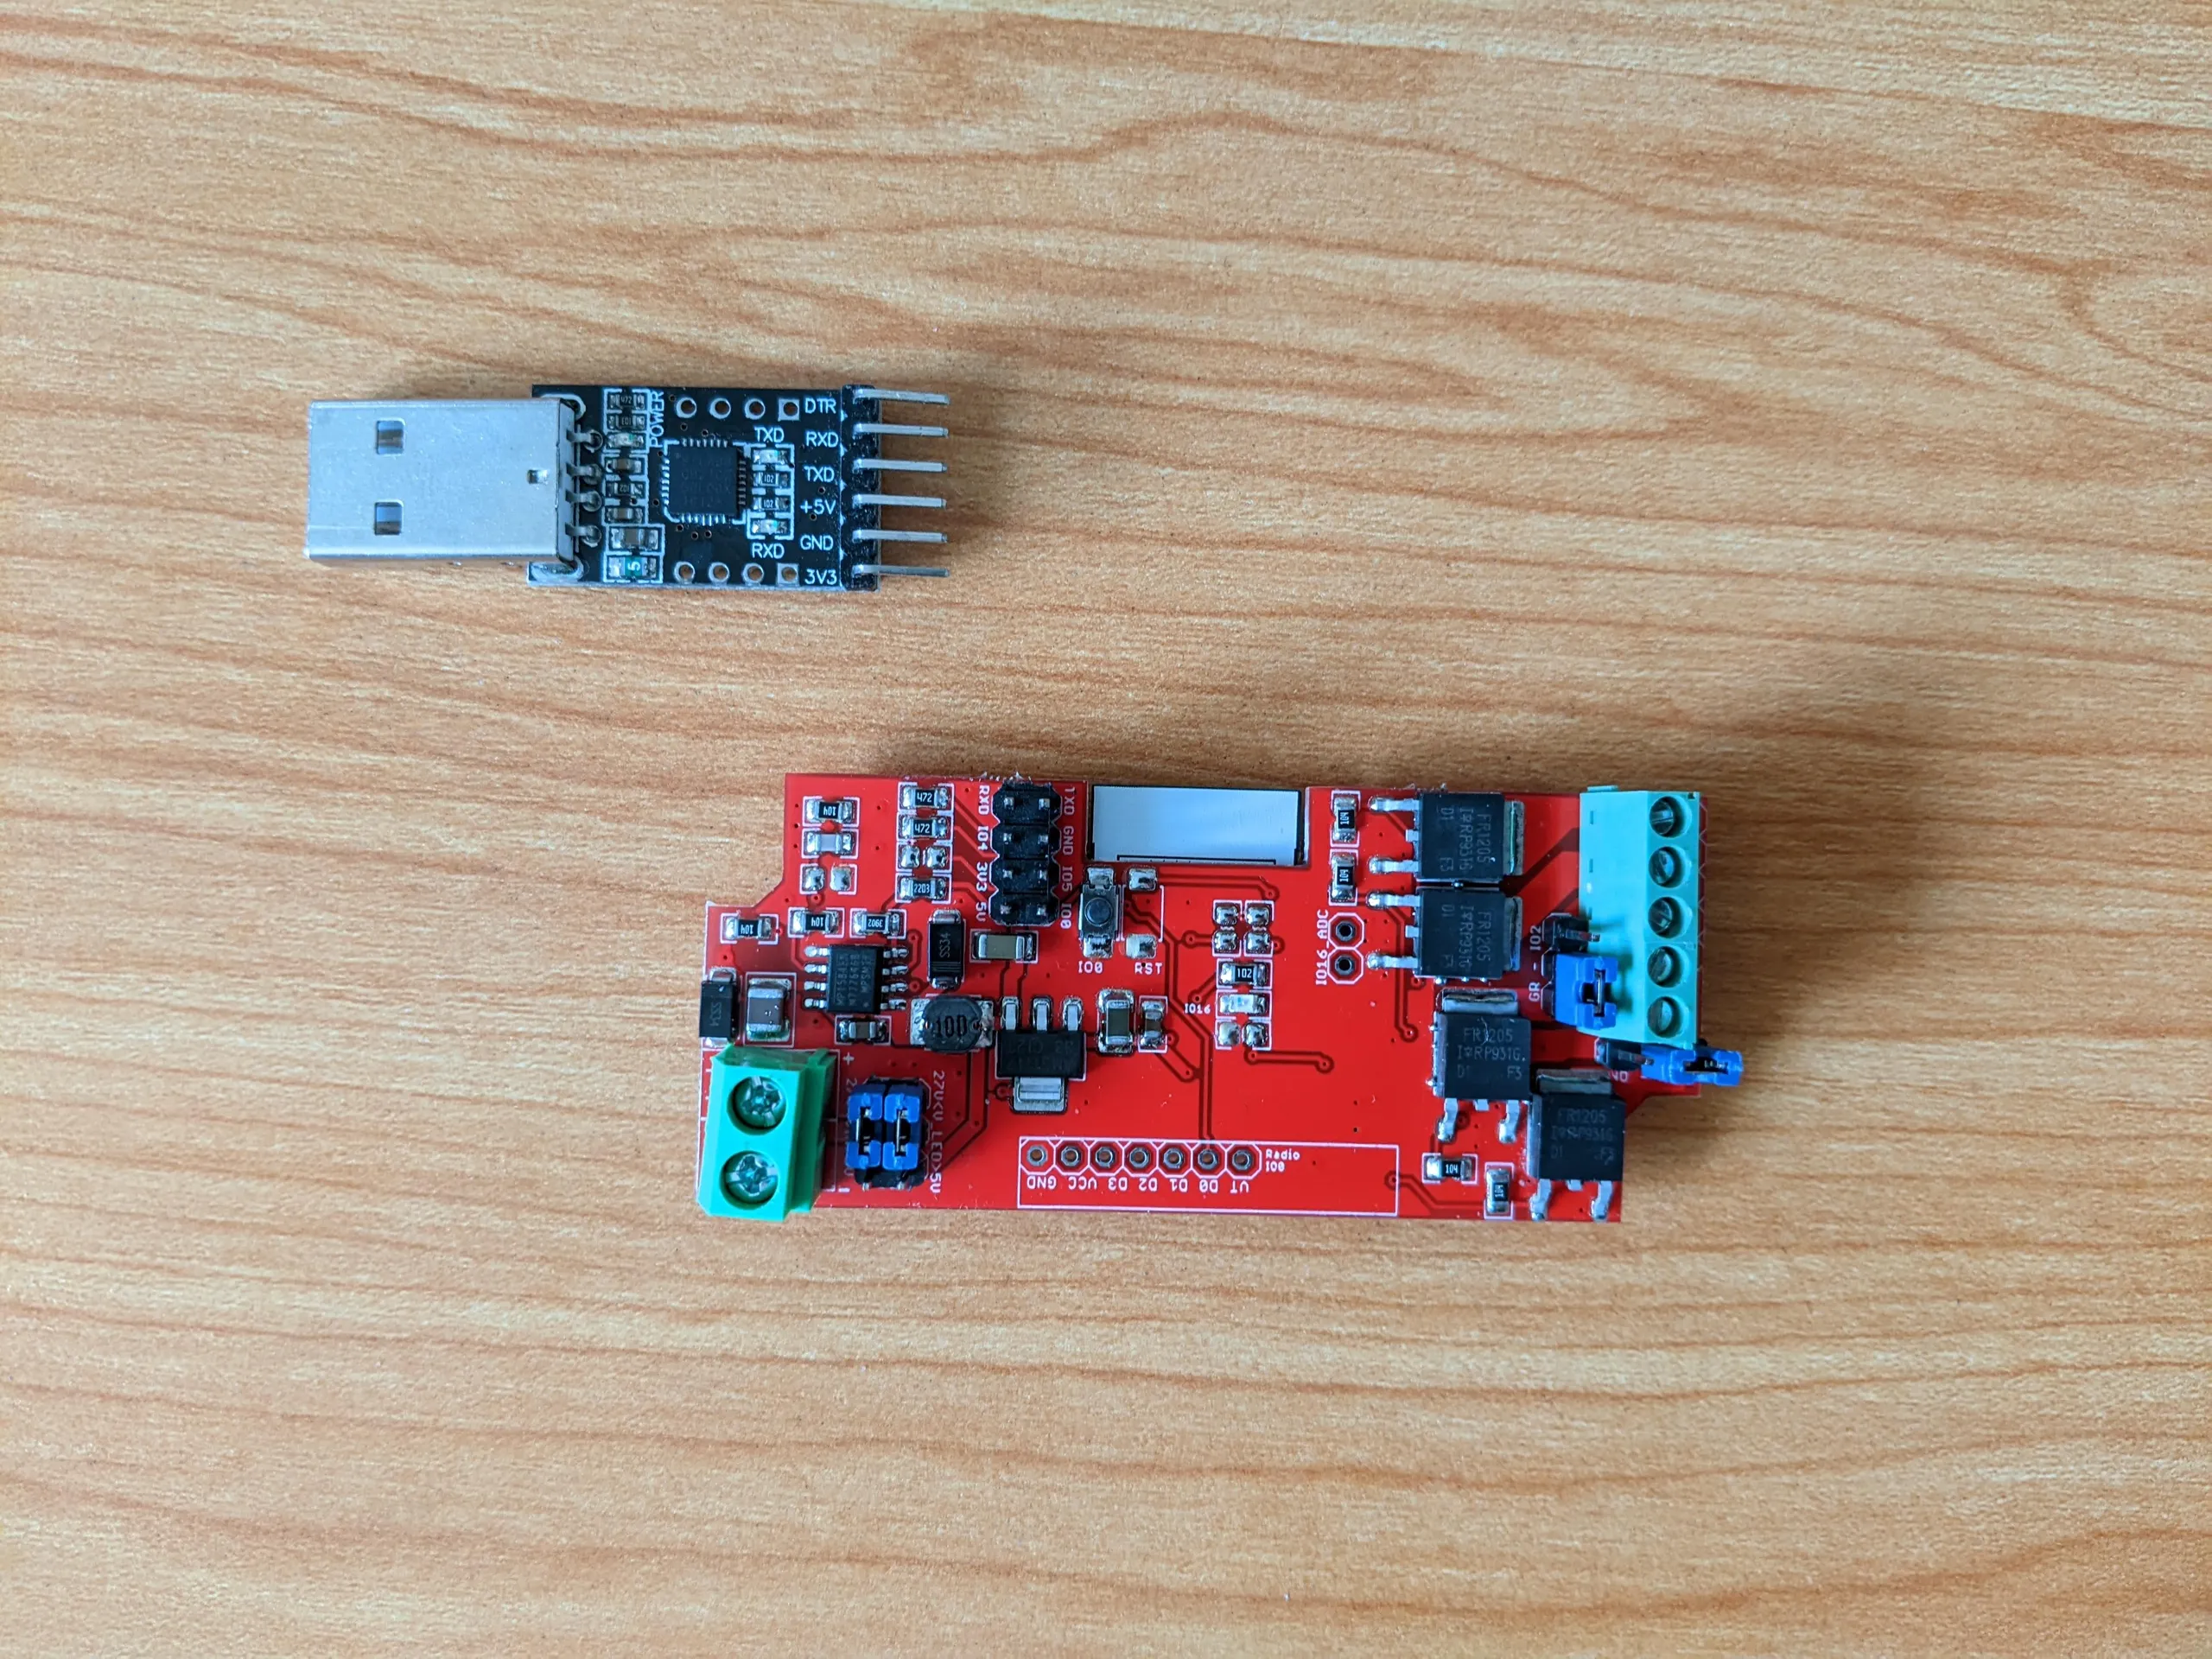 The ElectroDragon ESP LED strip control board alongside my USB FTDI adapter